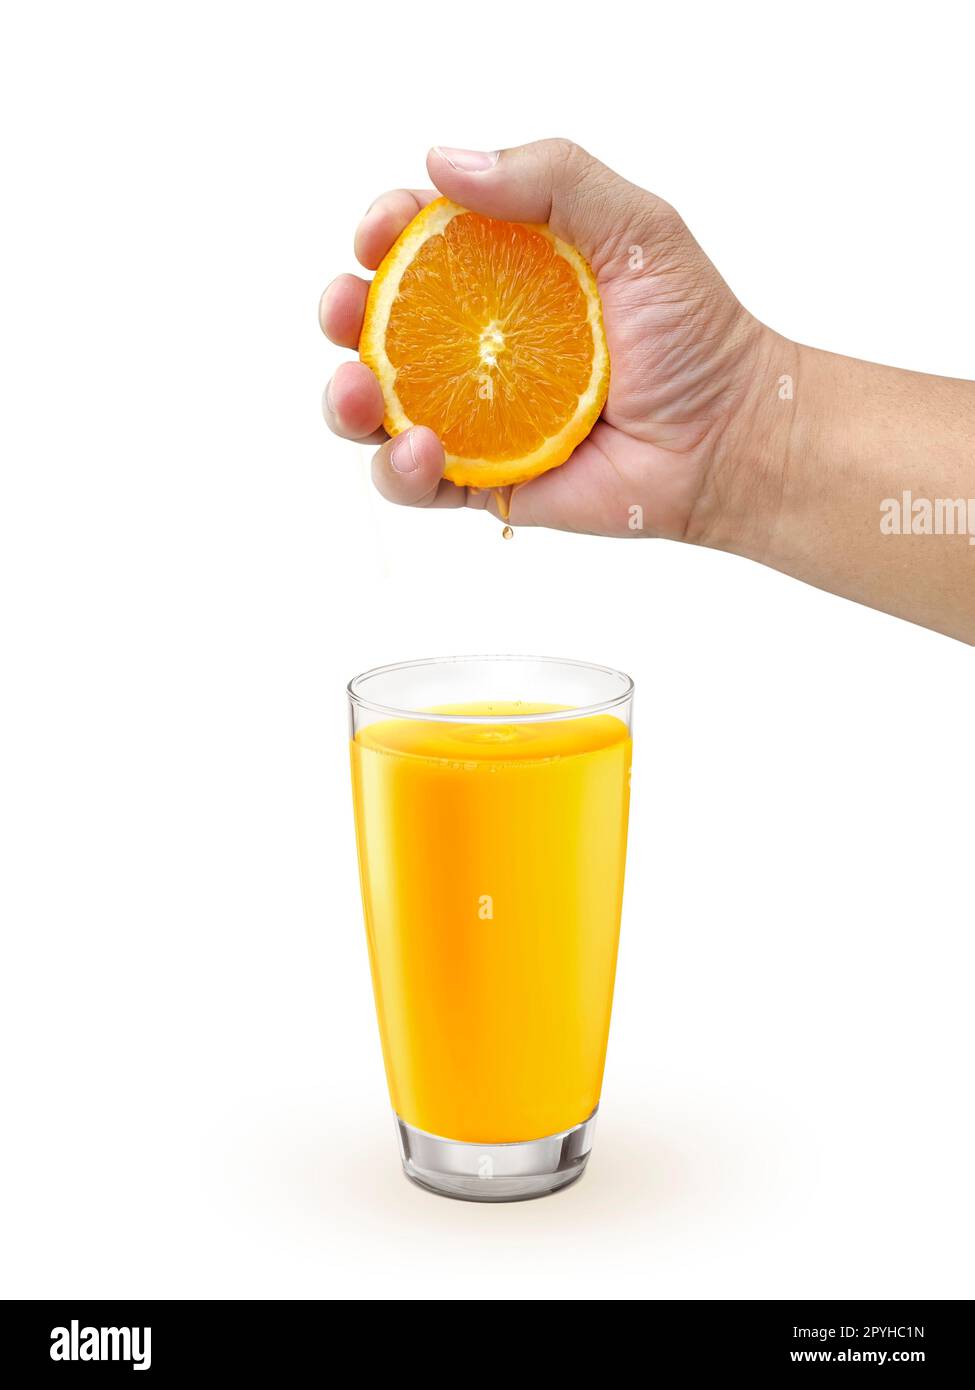 Schiacciare a mano l'arancia nel bicchiere con una bevanda di colore arancione sullo sfondo bianco Foto Stock